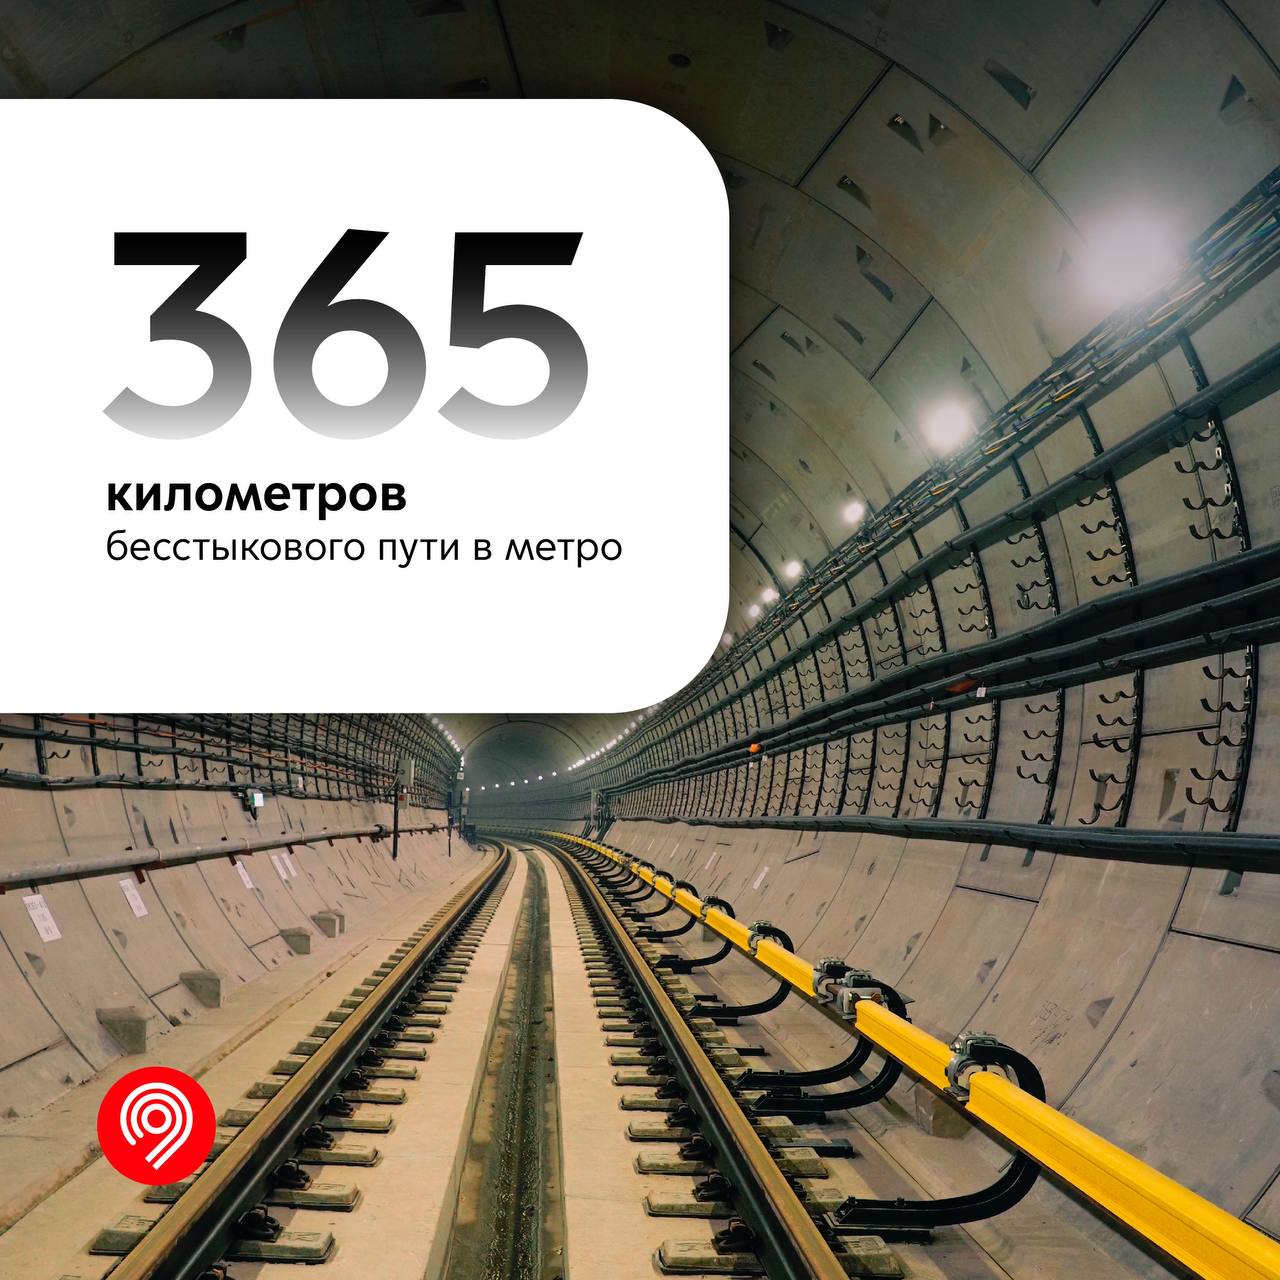 365 километров бесстыковых путей уложено в московском метро